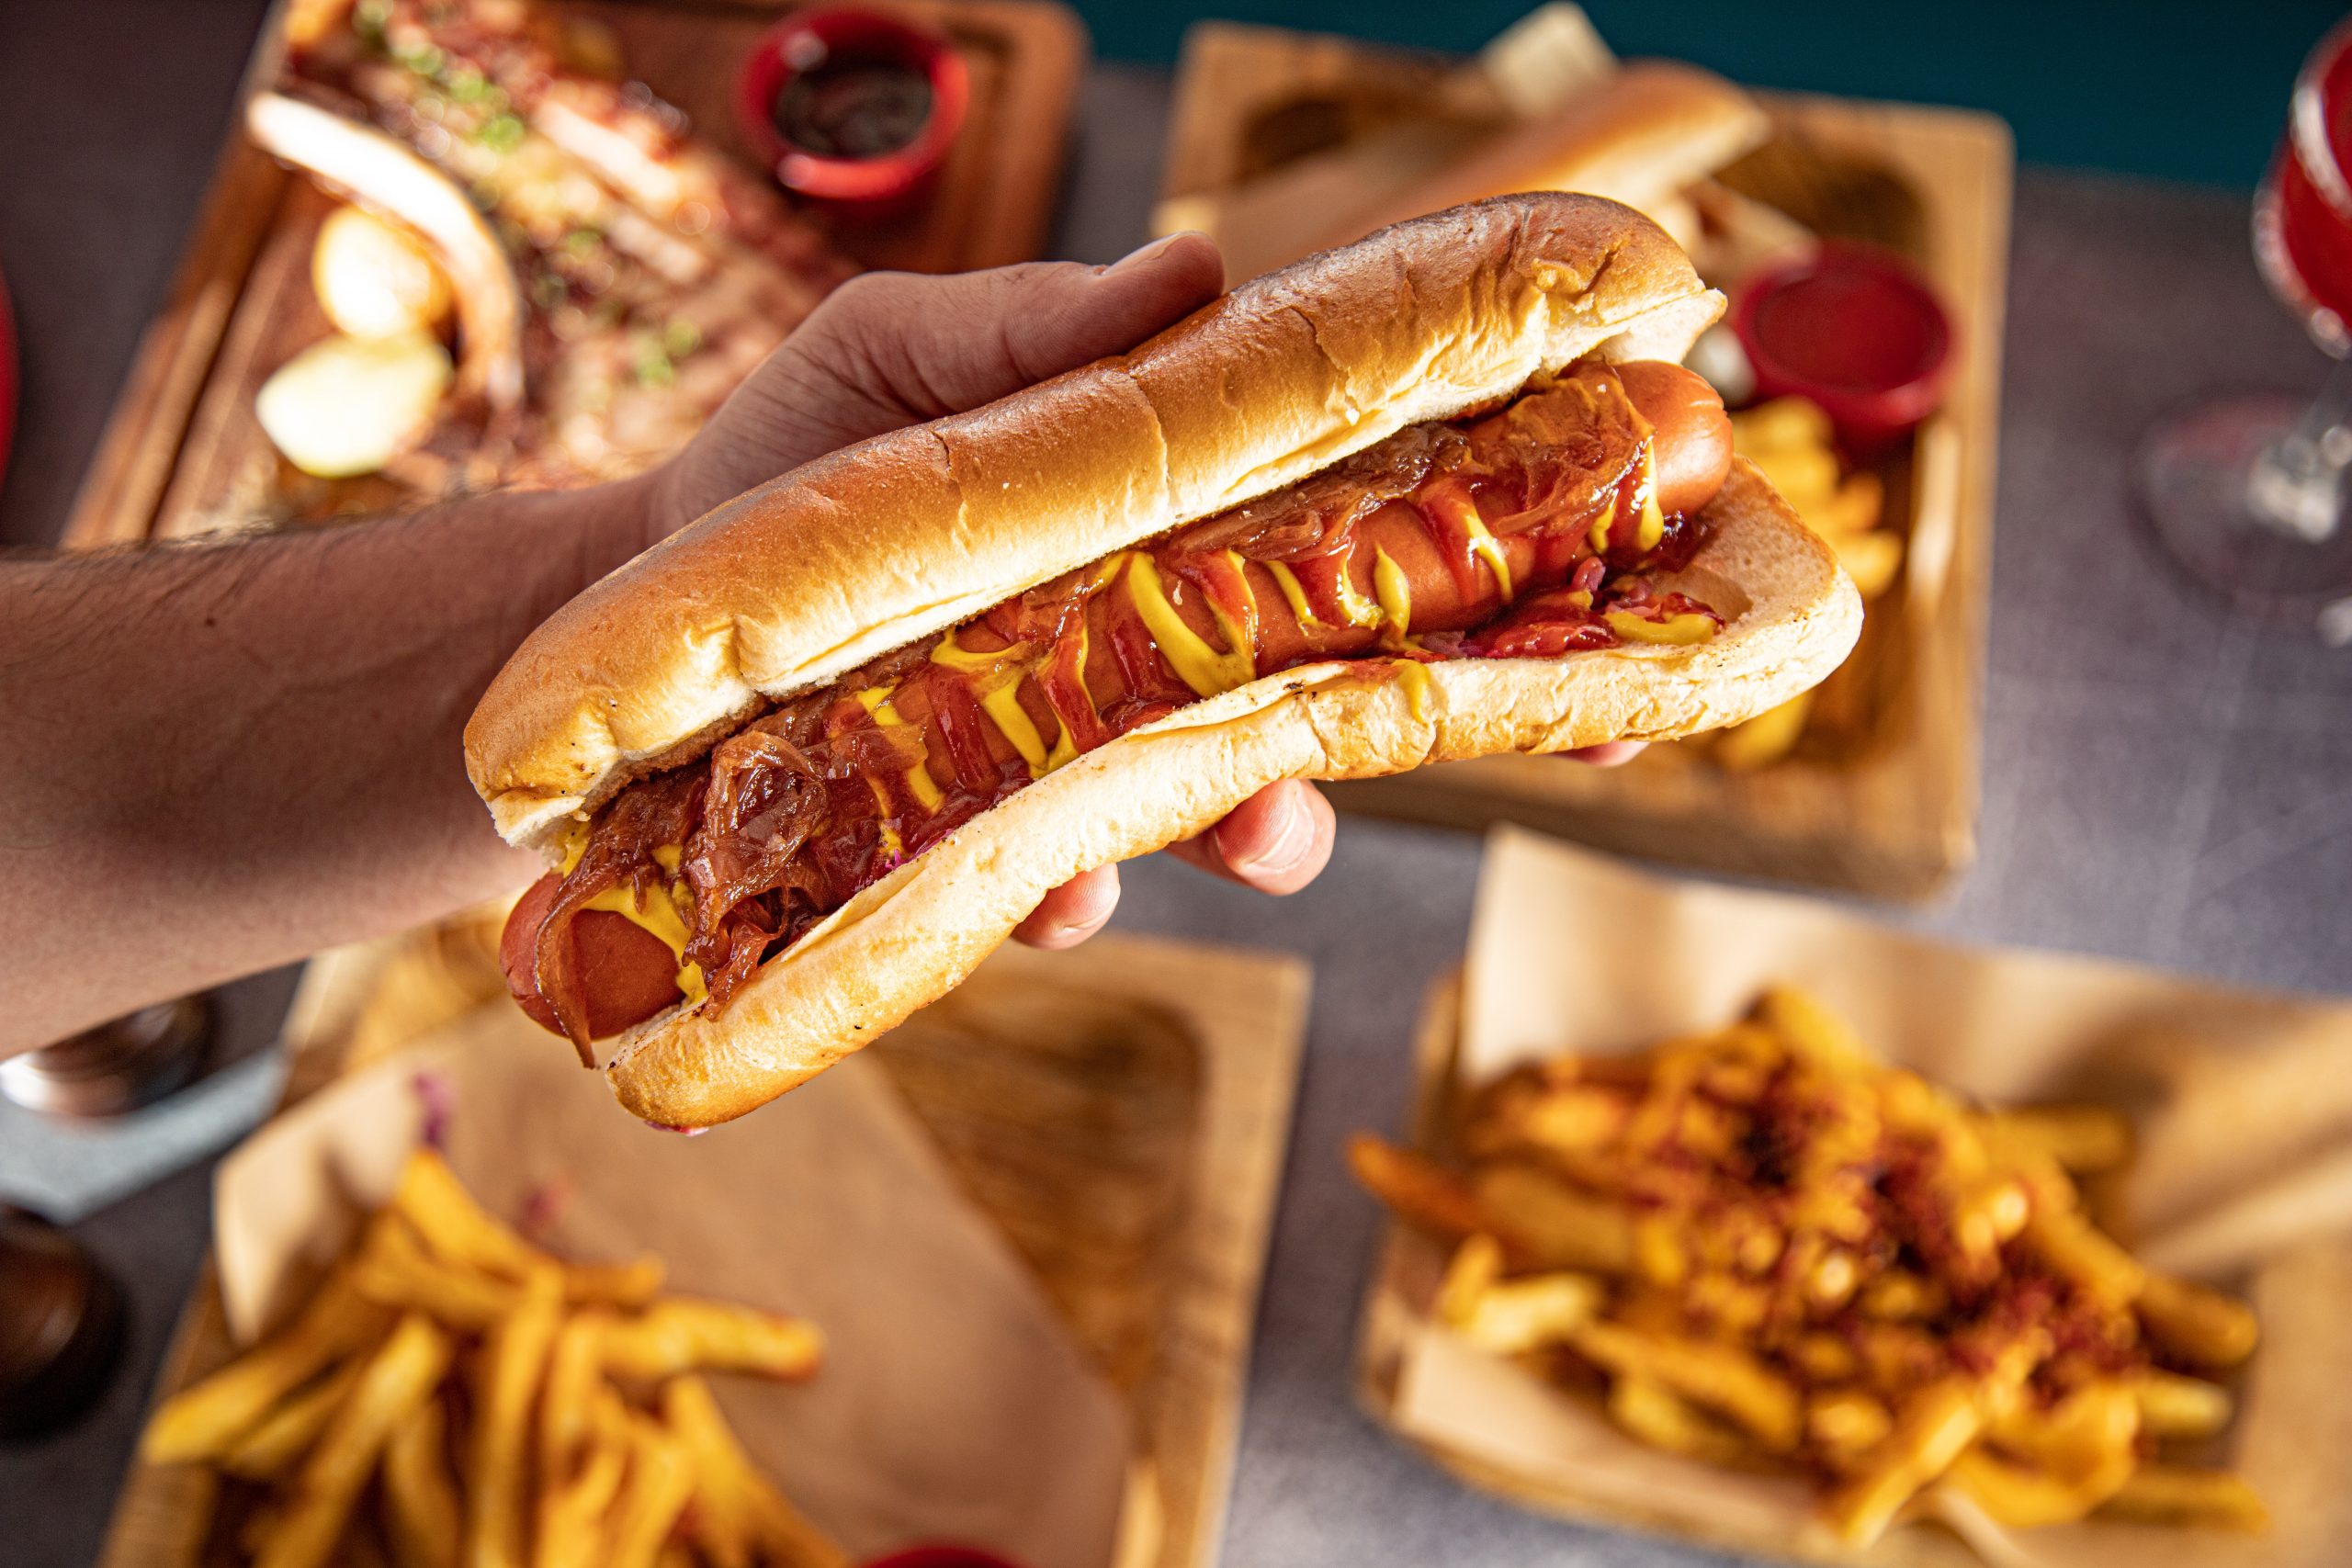 Sa minuta e shkurton jetën e shëndetshme një hot dog dhe çfarë e zgjat atë